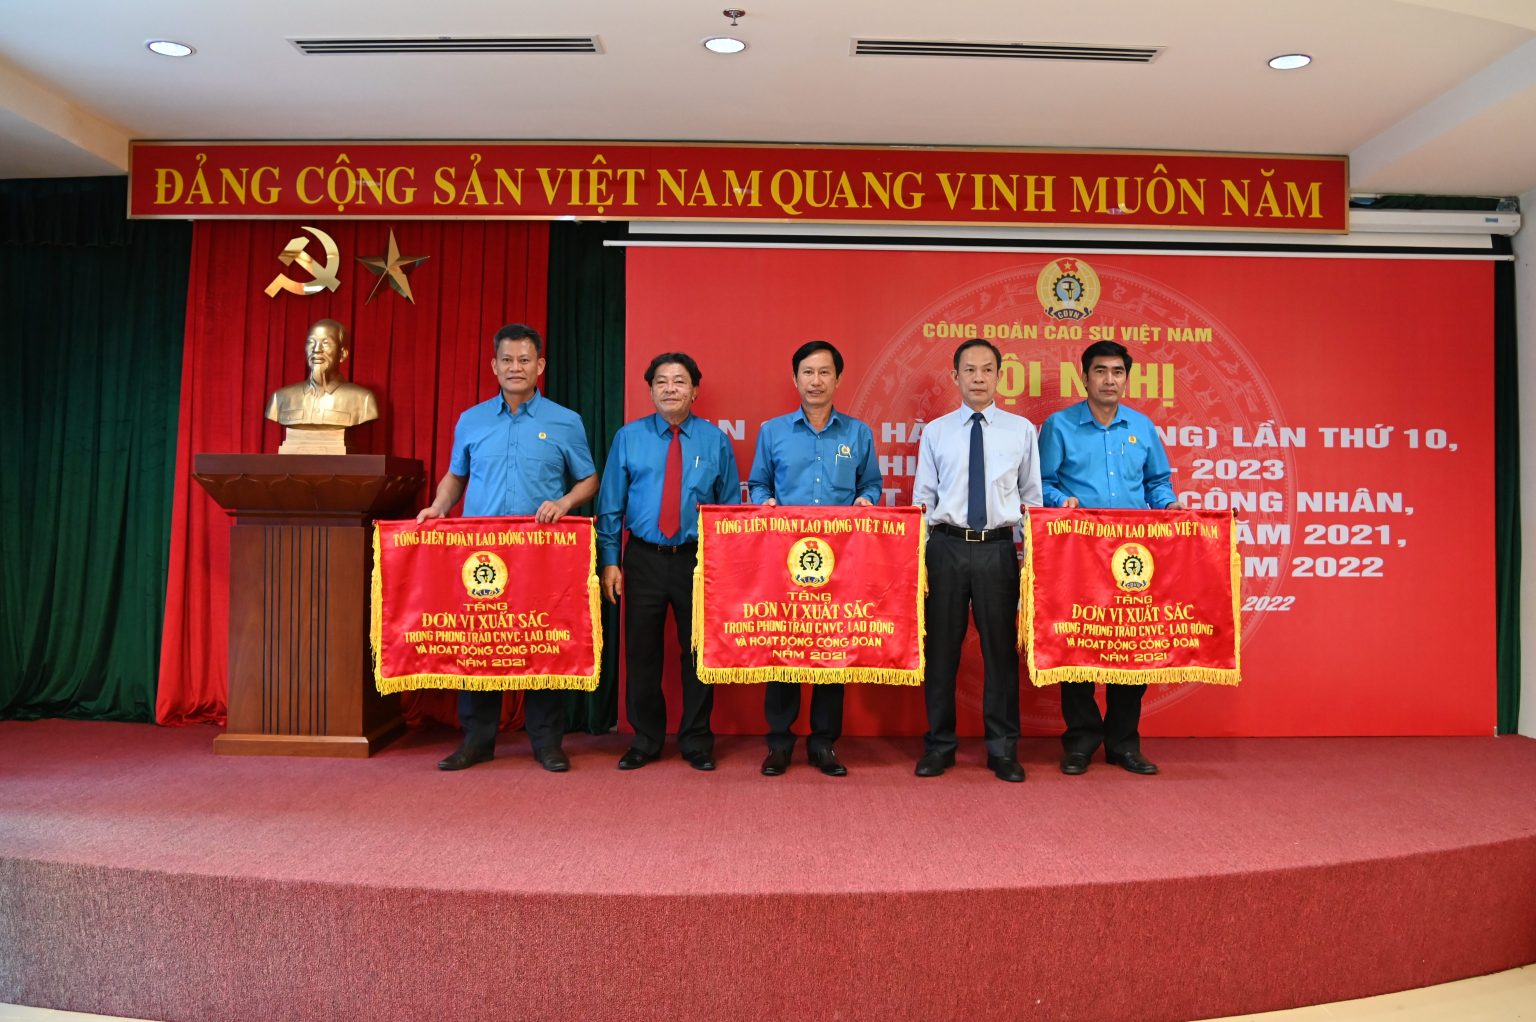 Ông Trần Ngọc Thuận – Chủ tịch HĐQT VRG và ông Phan Mạnh Hùng – Chủ tịch CĐ CSVN trao Cờ thi đua xuất sắc toàn diện của Tổng LĐLĐ VN cho các đơn vị